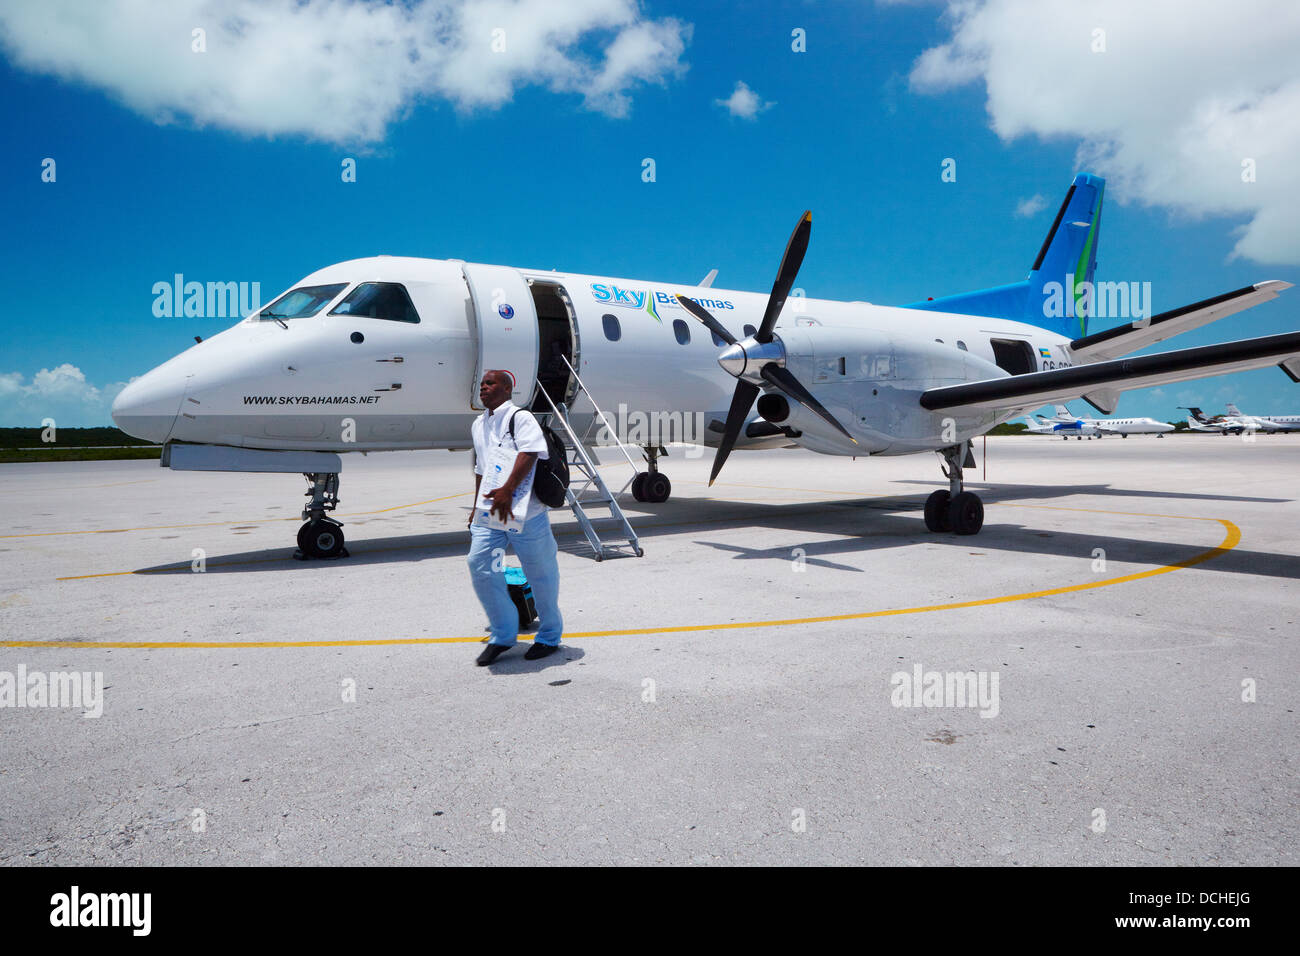 Sky Bahamas Airplane, New Providence Island, Bahamas, Caribbean Stock Photo